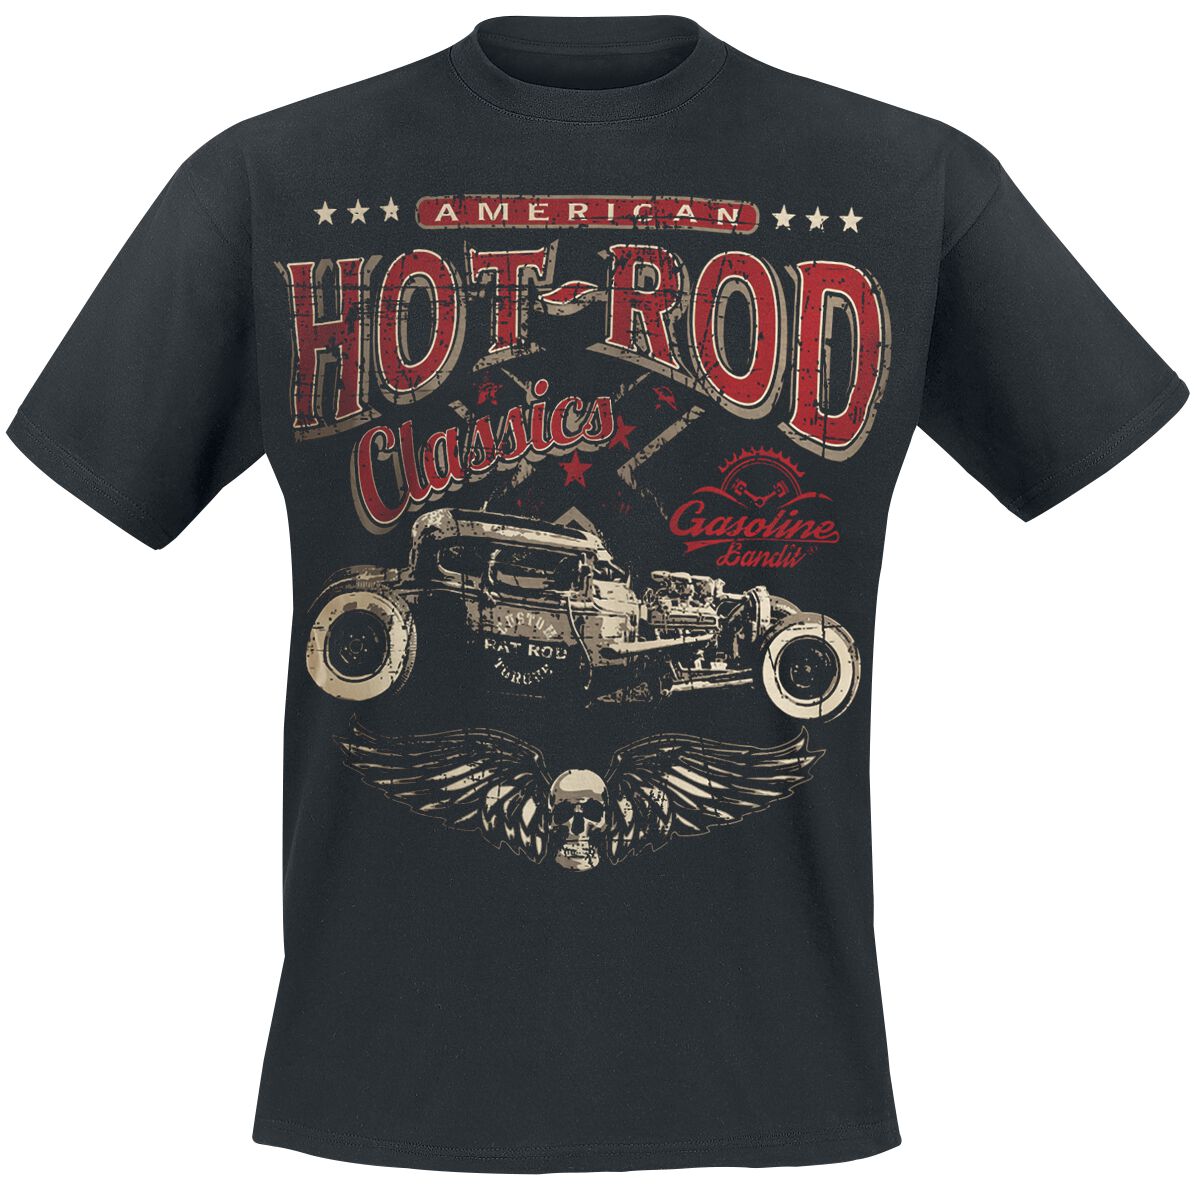 Gasoline Bandit - Rockabilly T-Shirt - Hot Rod Classics - S bis 3XL - für Männer - Größe 3XL - schwarz